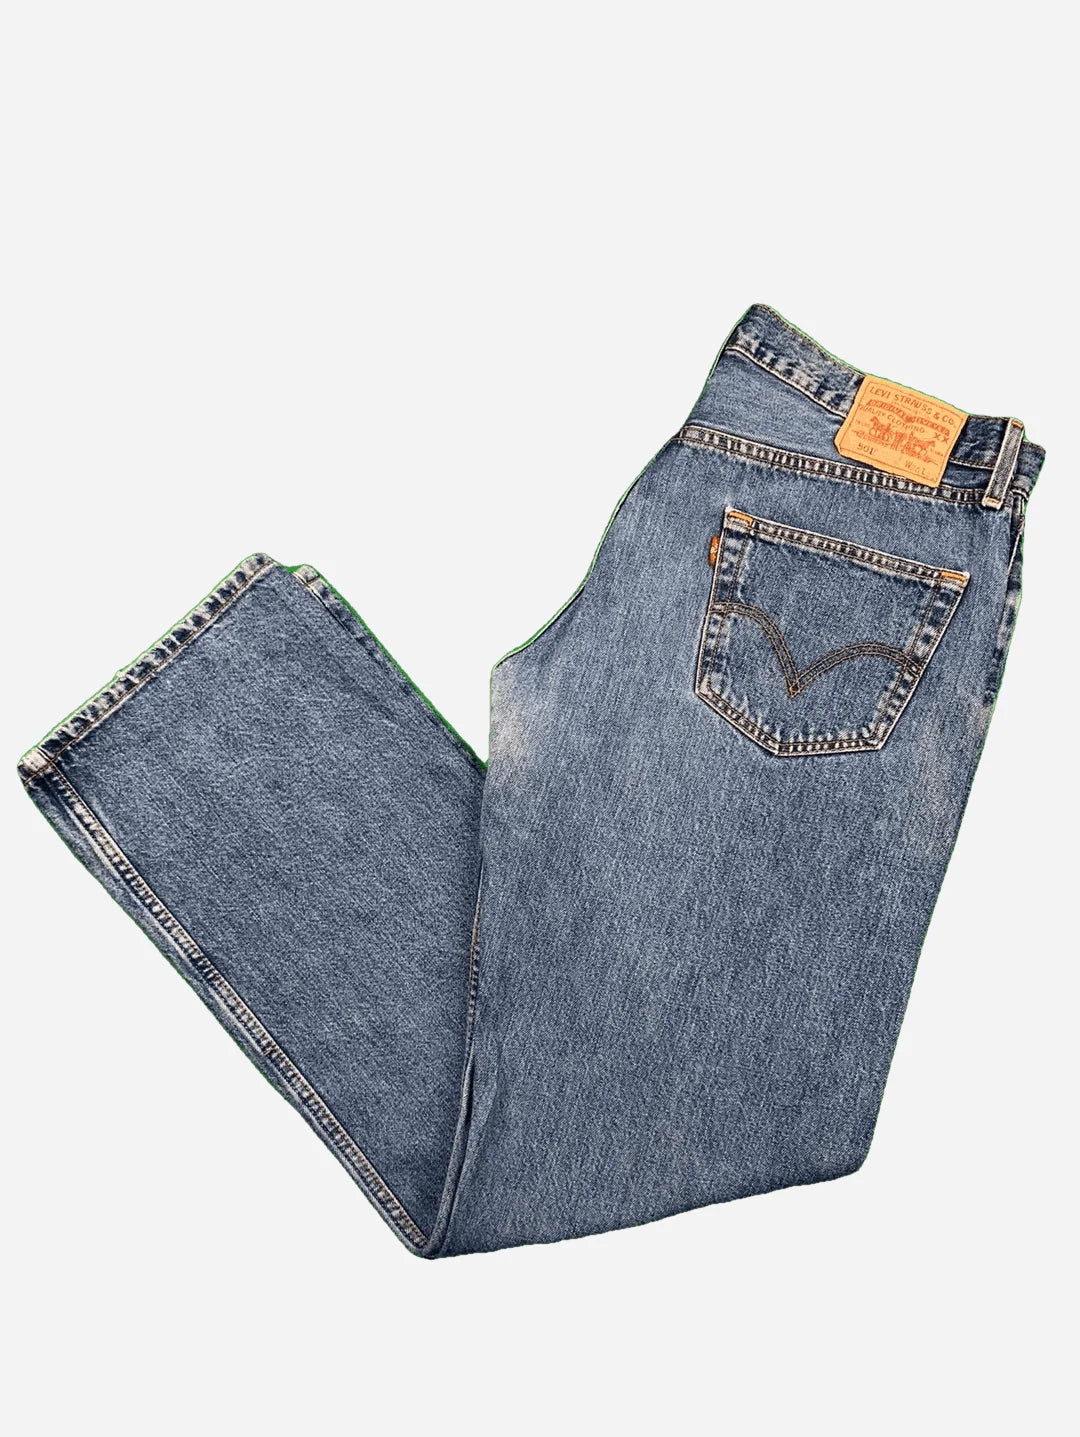 Levi's 501 Jeans 36/32 (XL)